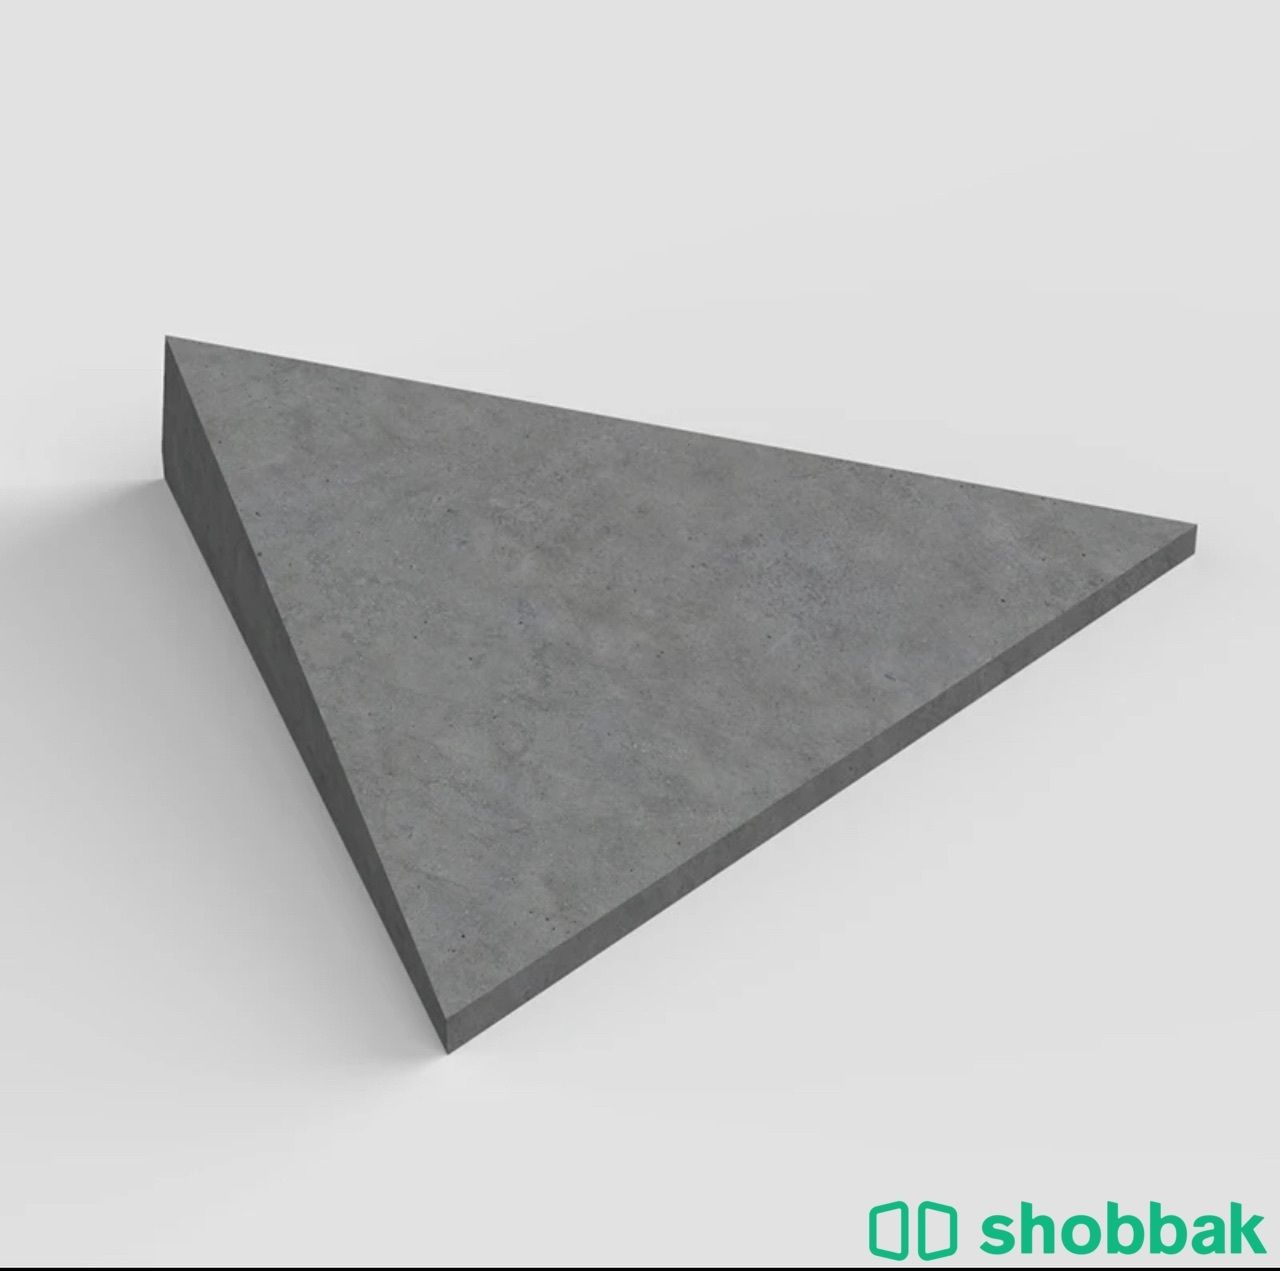 قوالب للجدران 3D Shobbak Saudi Arabia